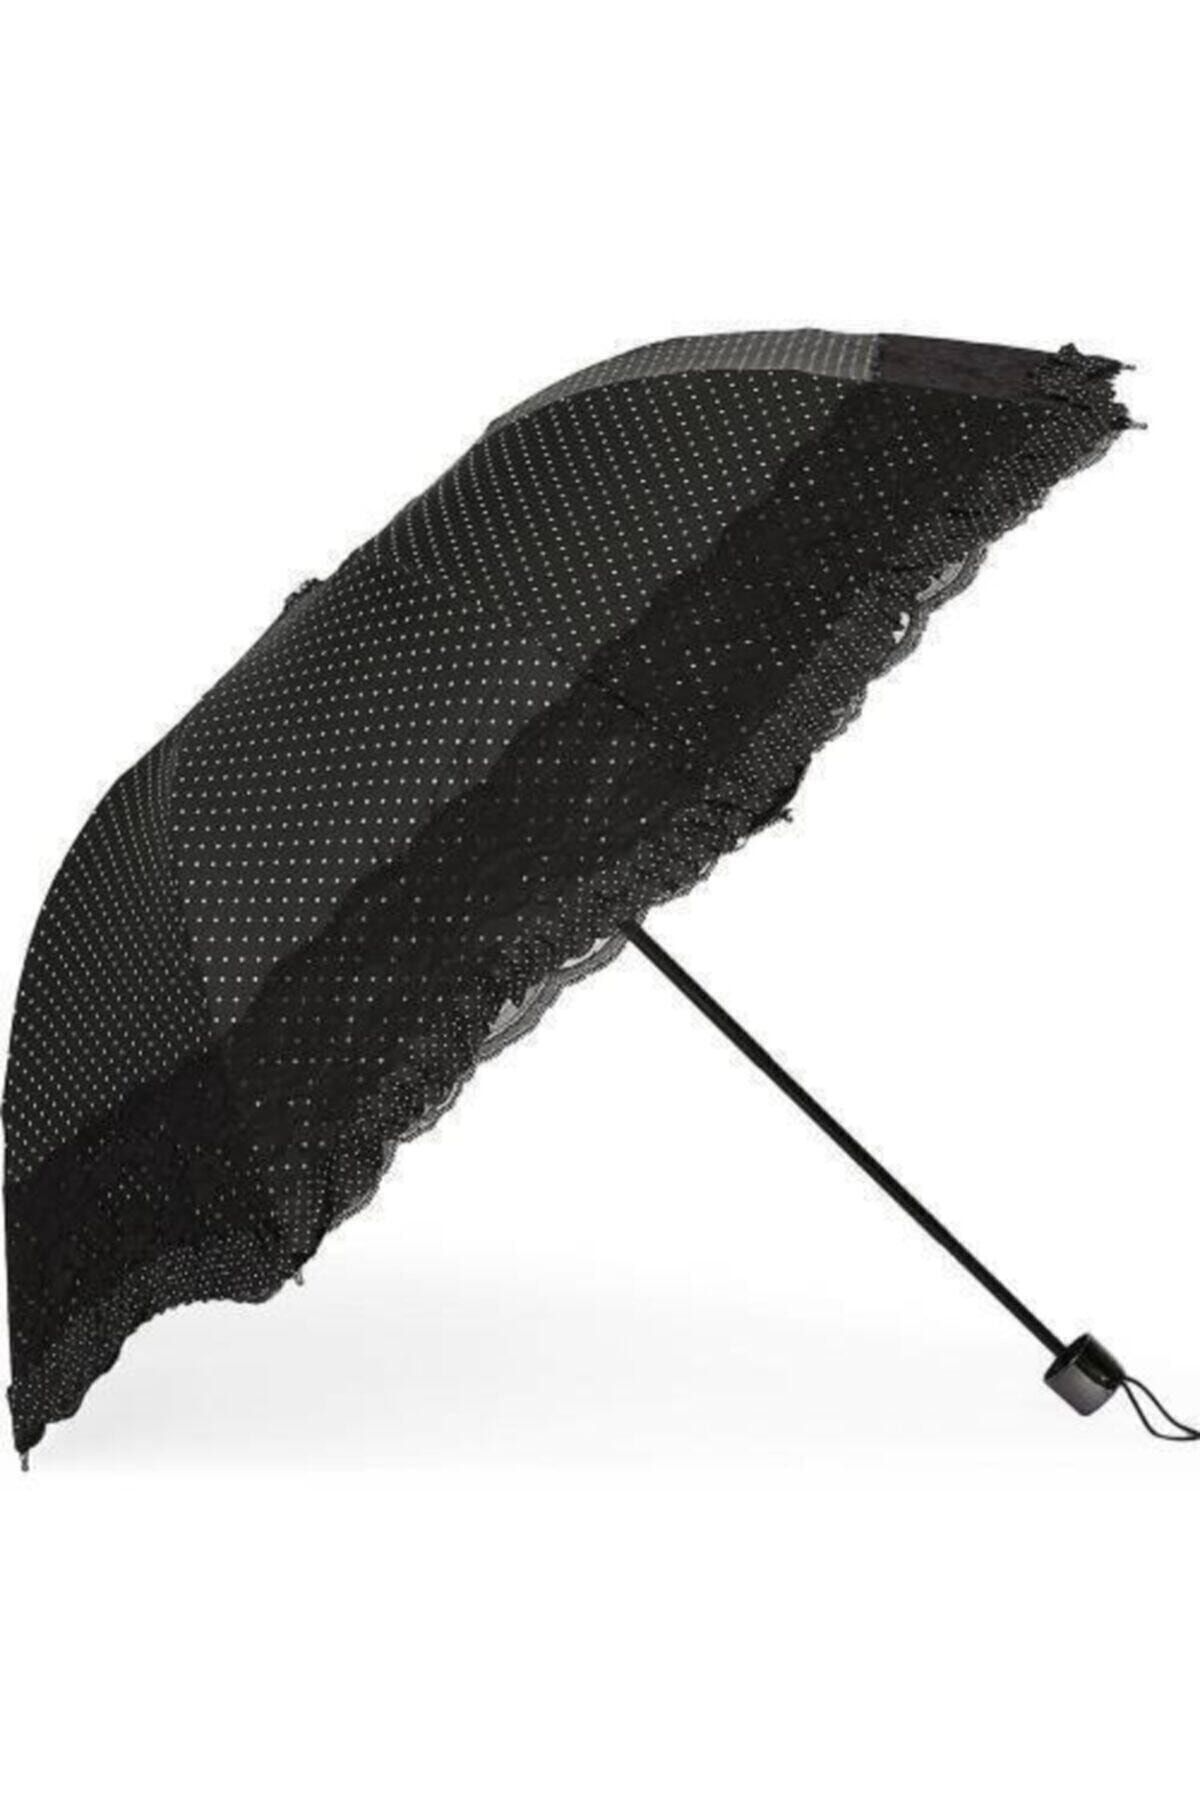 Siyah Şemsiye Fiyatları & Siyah Baston Şemsiye - Trendyol - Sayfa 21